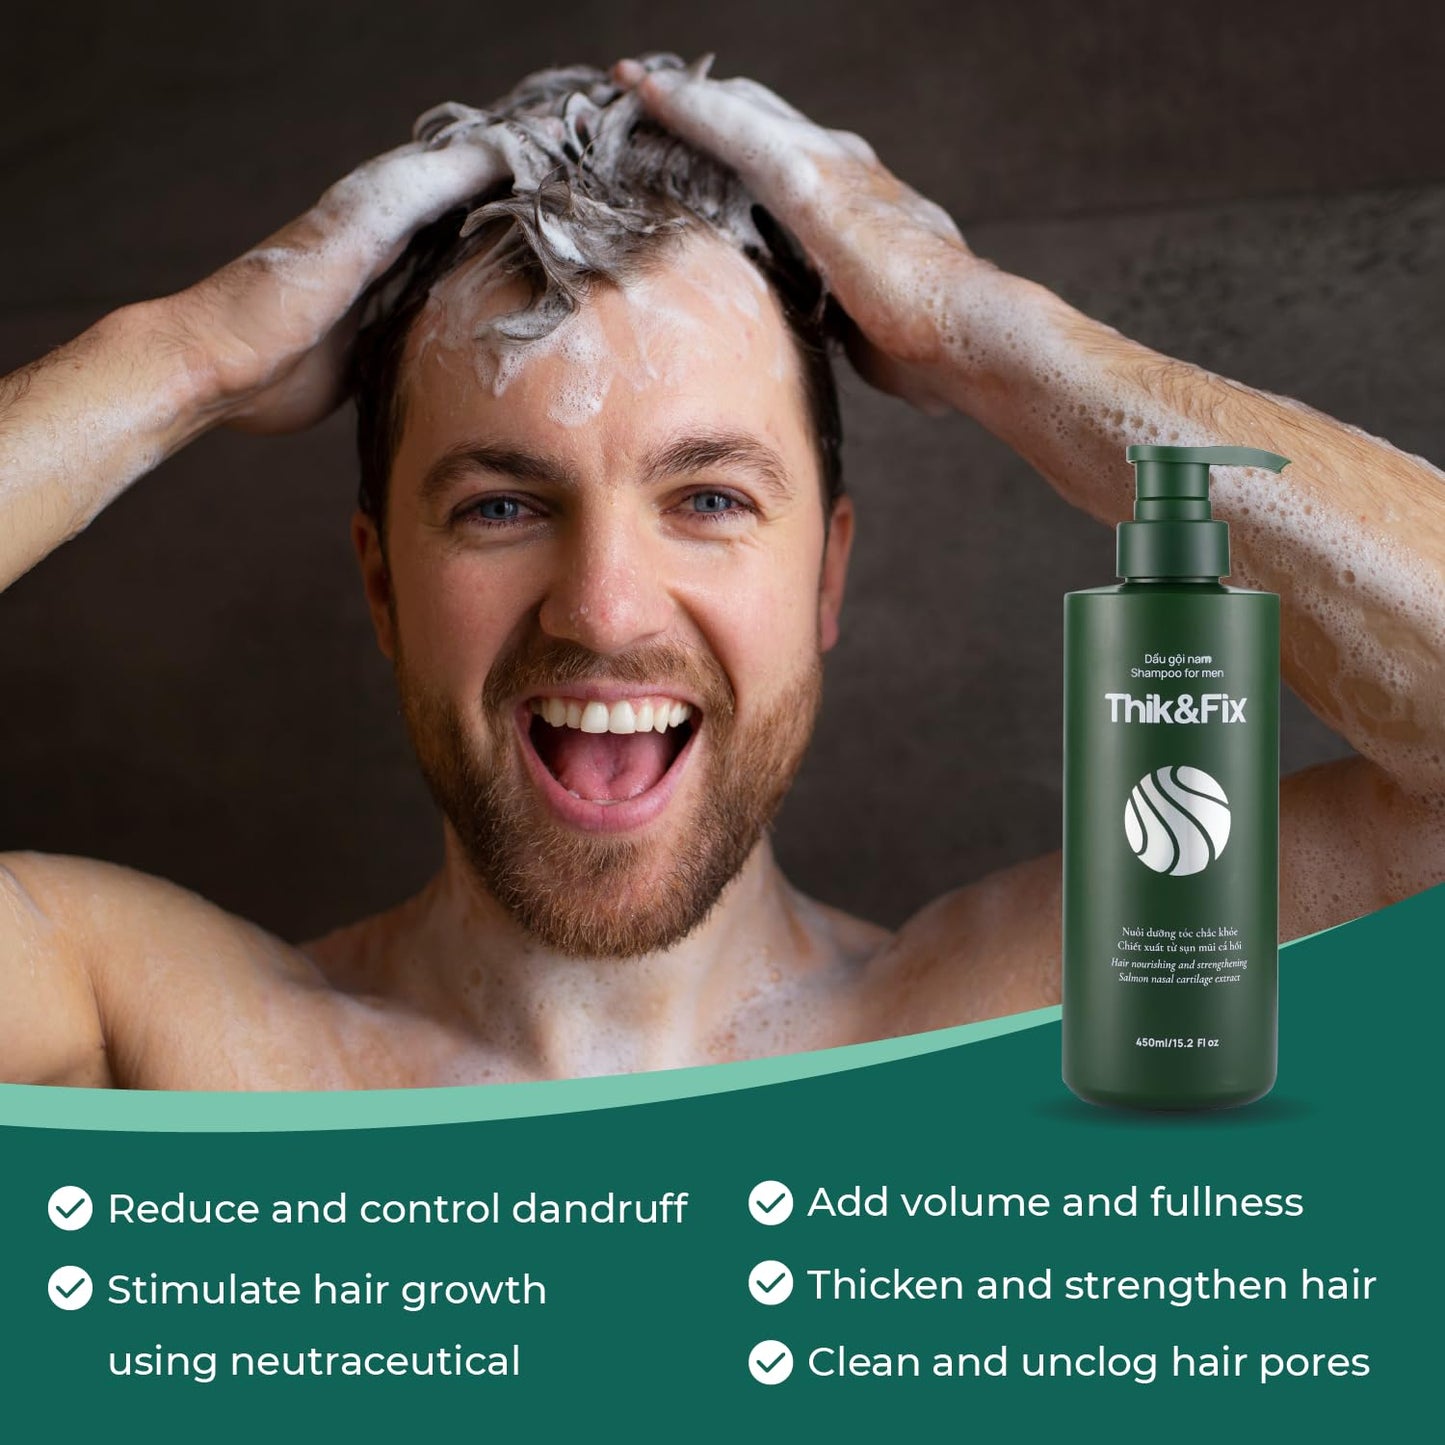 Thik&Fix Hair Growth Shampoo for Men (15.2 Fl oz/450ml)